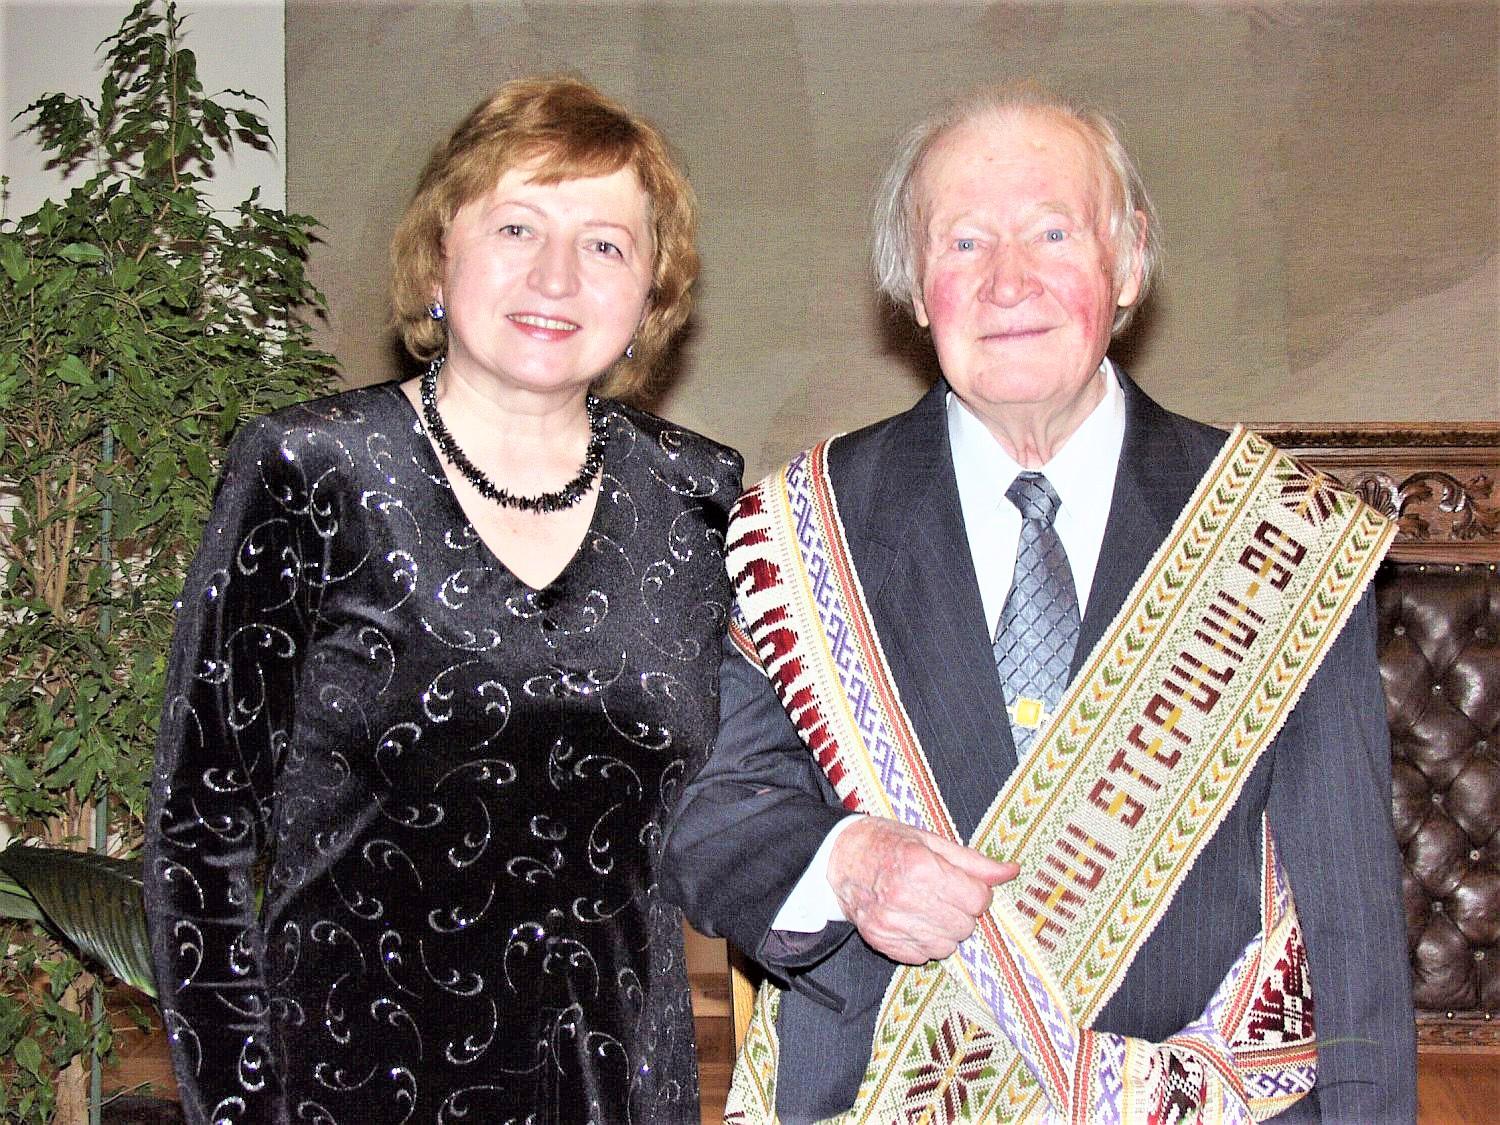 Kanklininkė Lina Naikelienė: biografija su legendiniais sąskambiais / 1.	Profesorė L. Naikelienė su savo mokytoju P. Stepuliu. 2003 m.